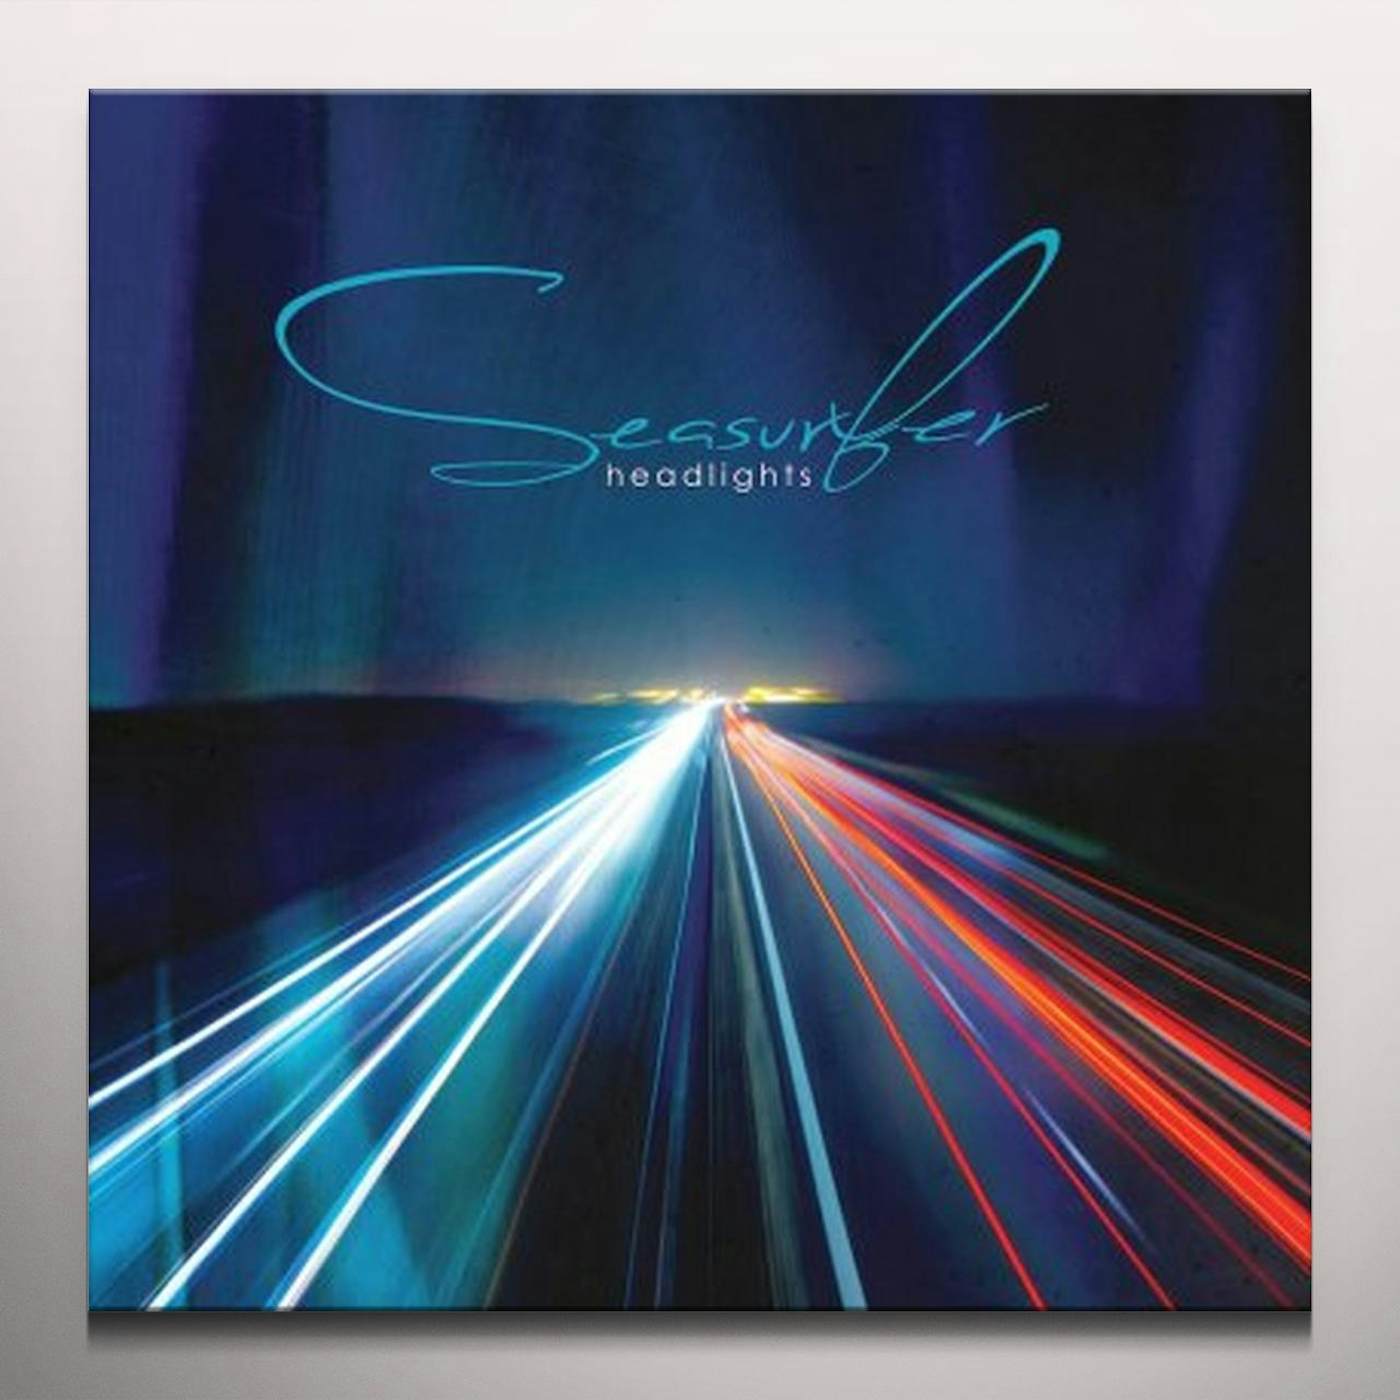 Seasurfer Headlights Vinyl Record